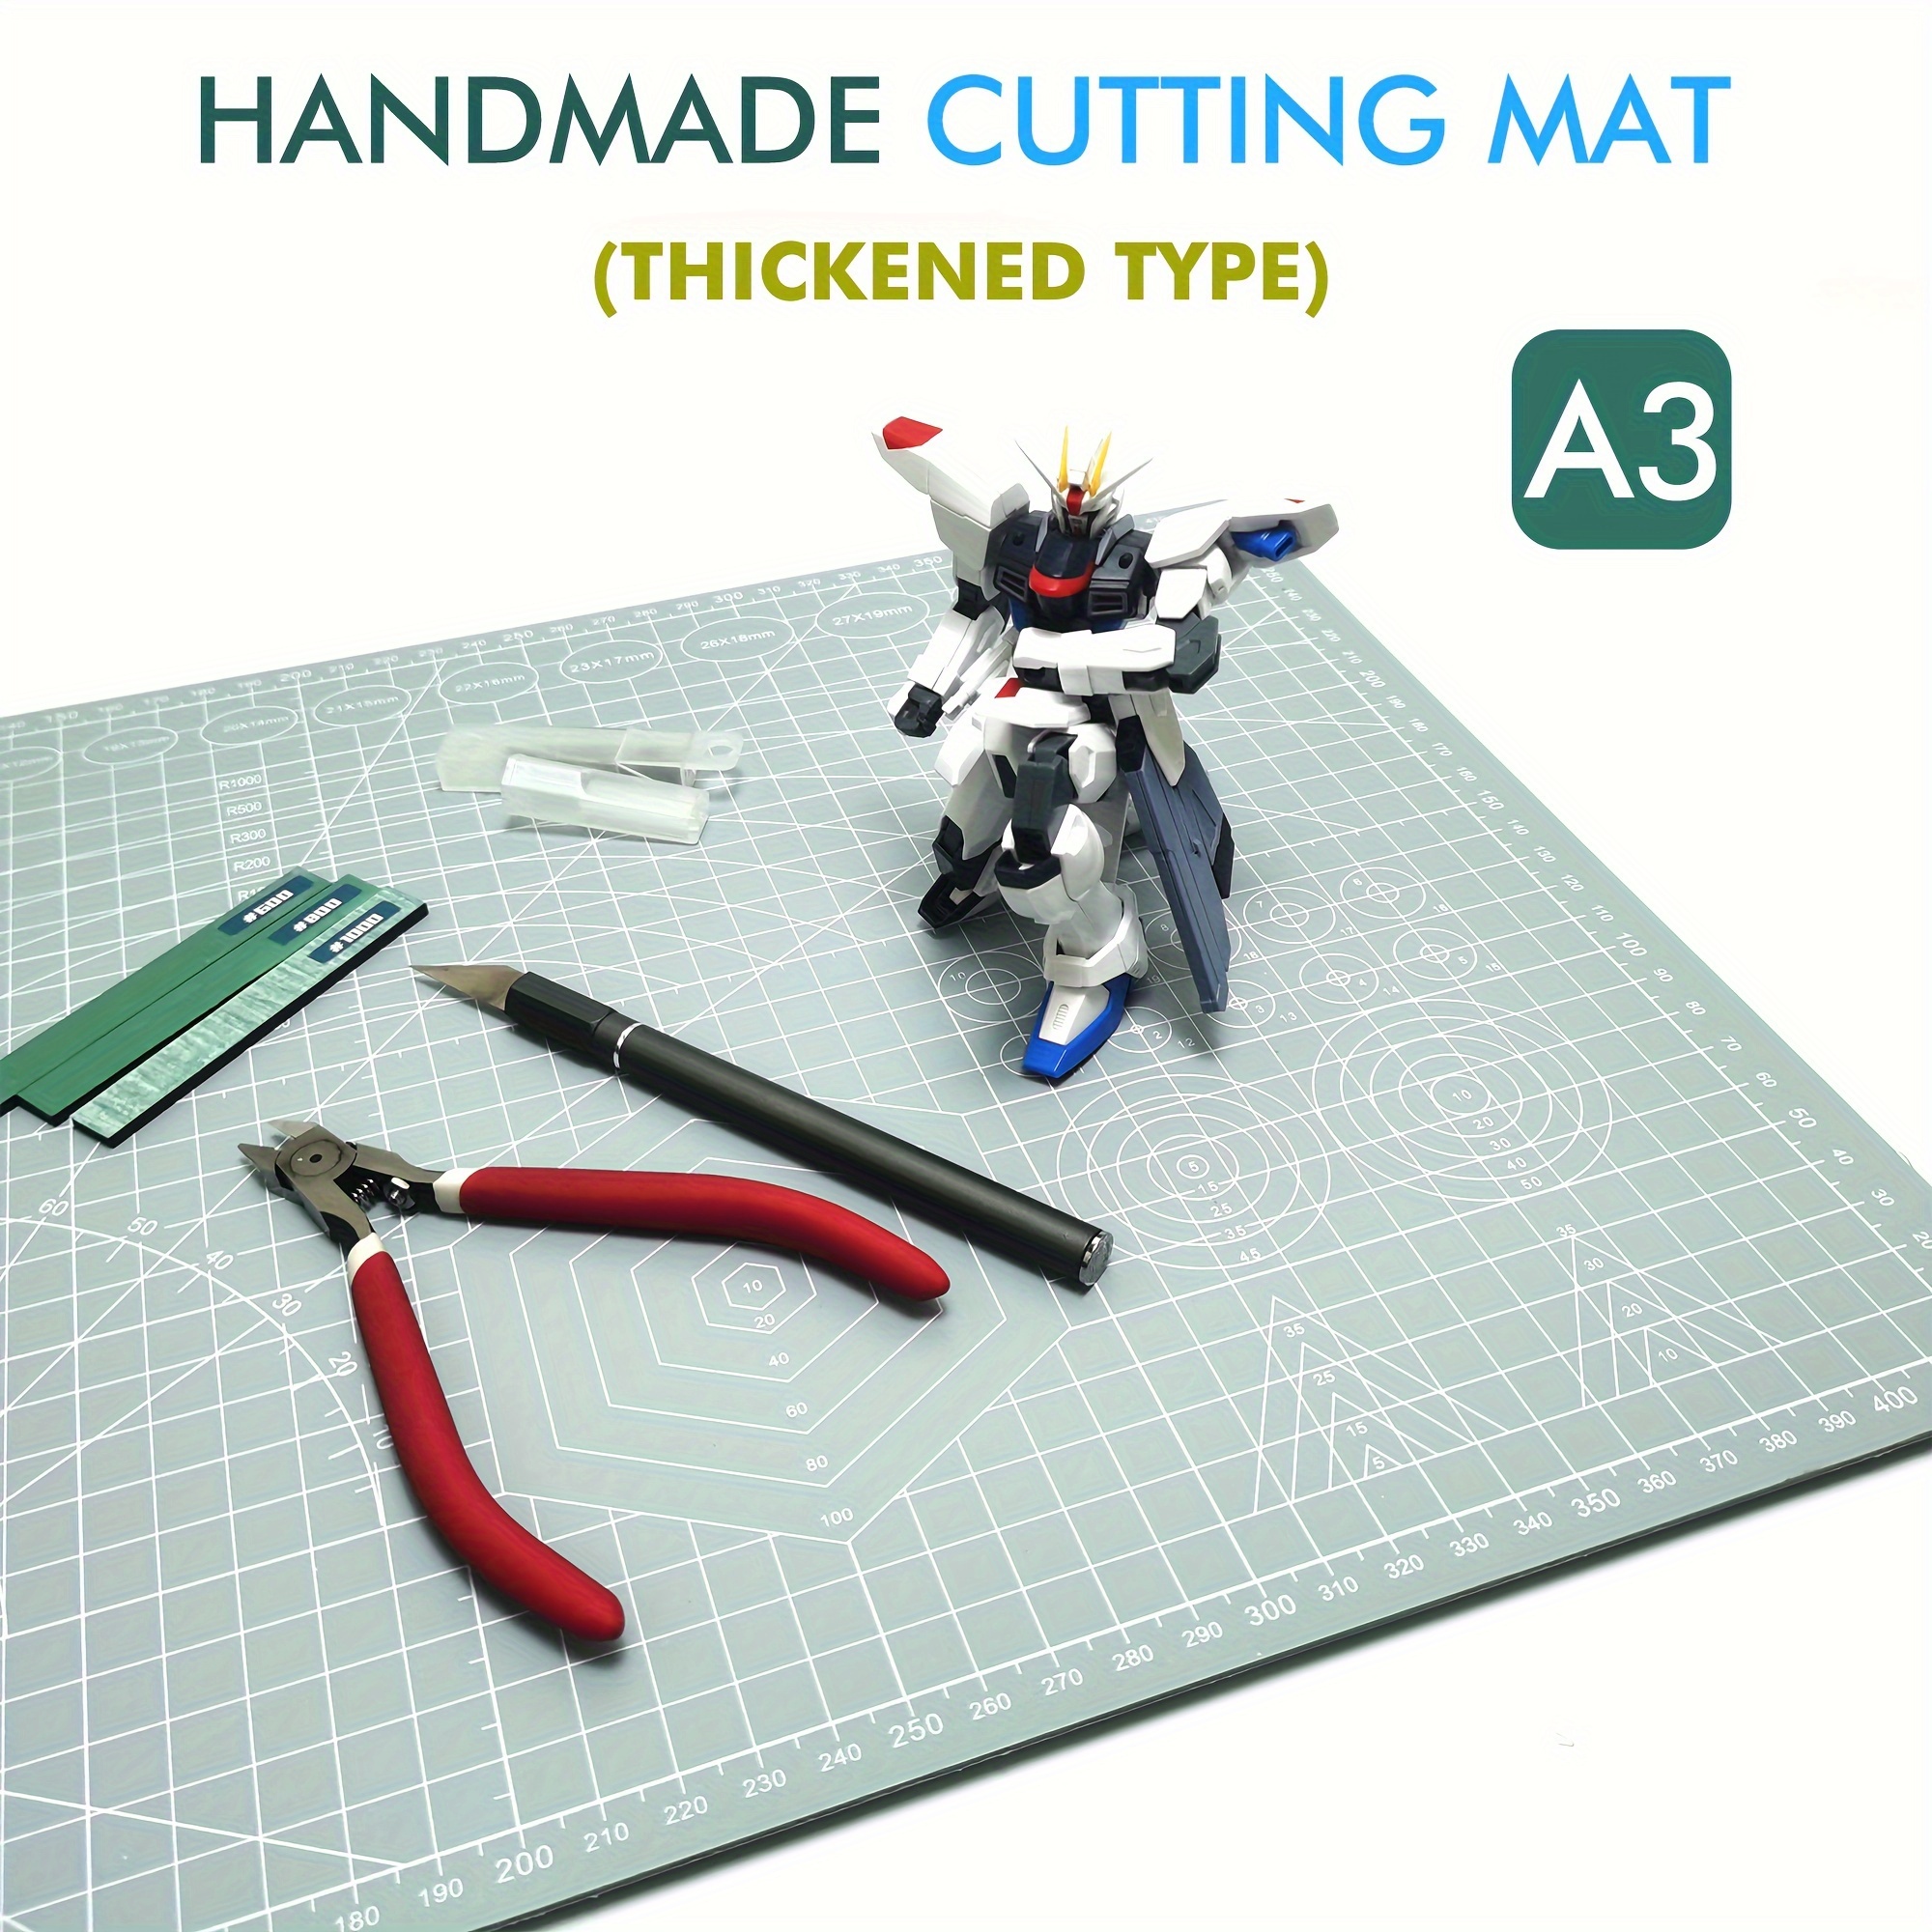 Cutting Mat, Tools & Materials